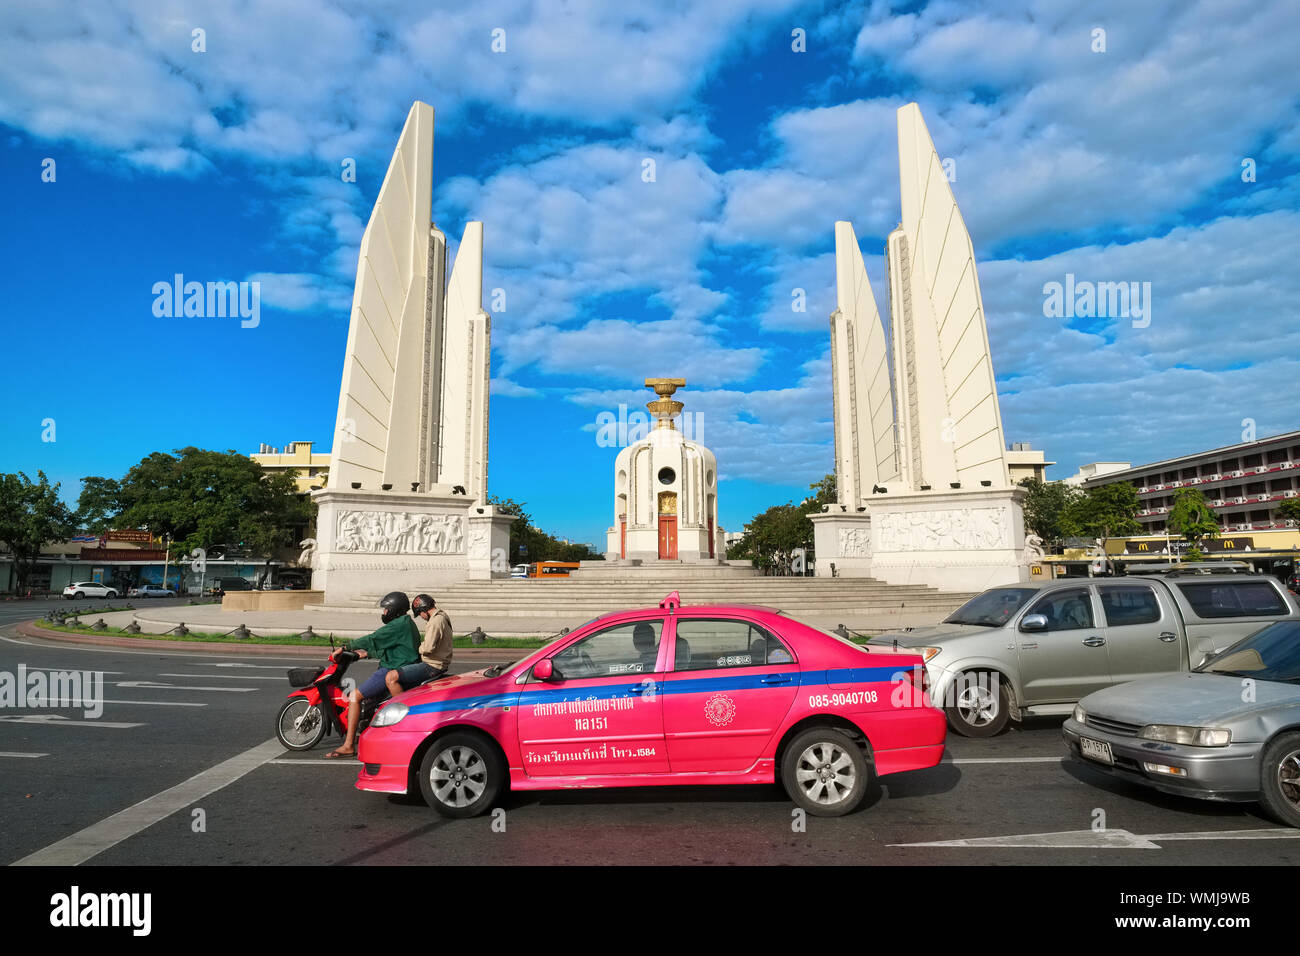 La democrazia è il monumento di Ratchadamnoen Avenue, Bangkok, Thailandia, per commemorare la fine della monarchia assoluta e l'inizio della democrazia nel 1932 Foto Stock